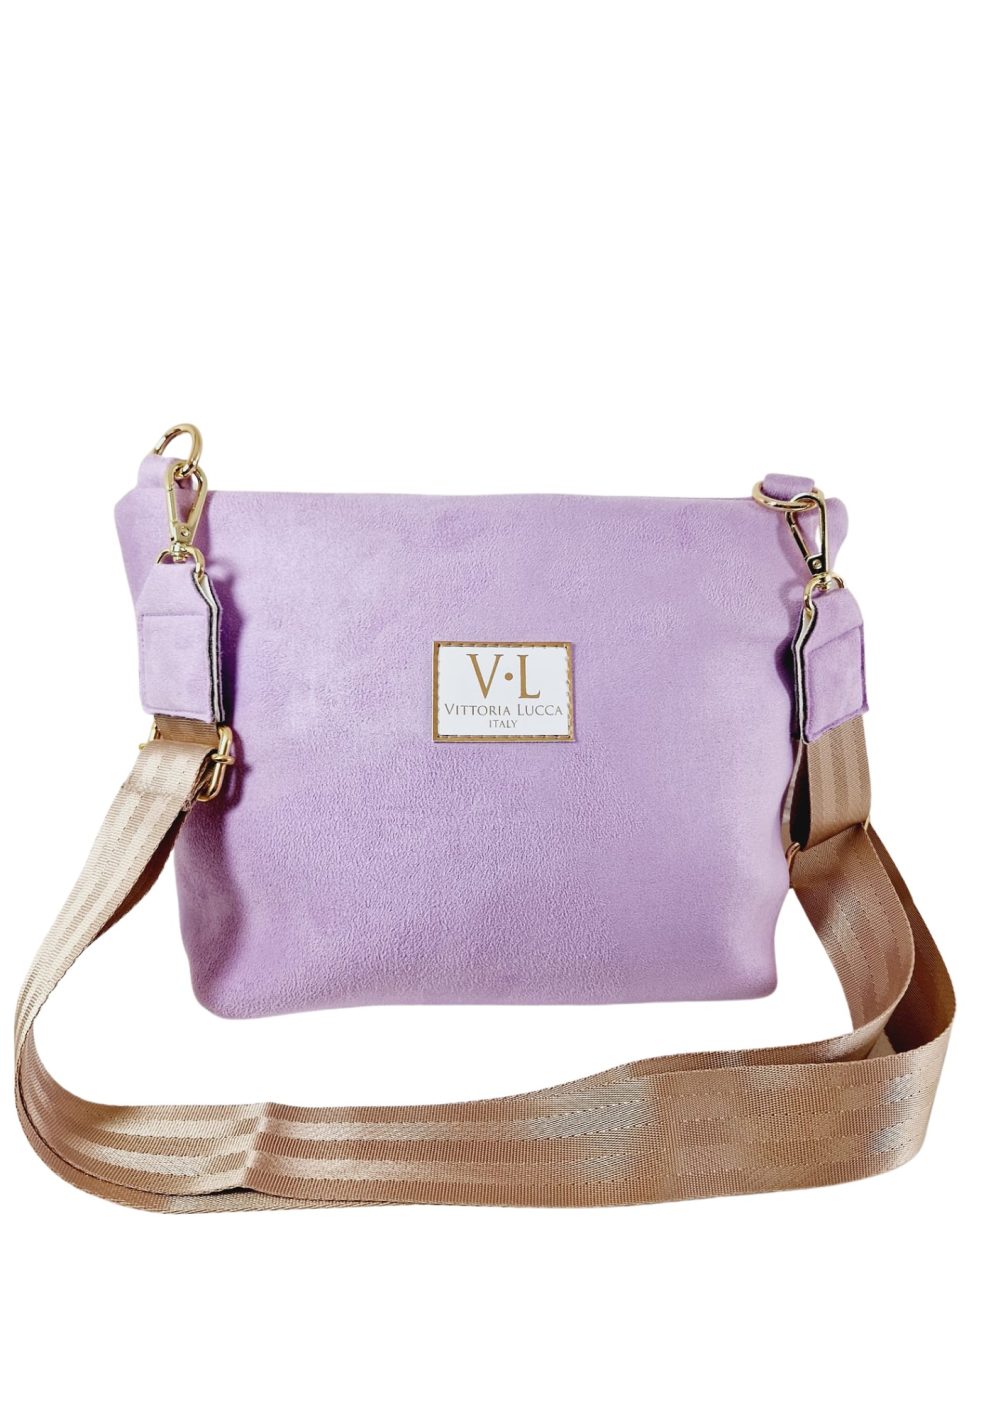 fialová kabelka